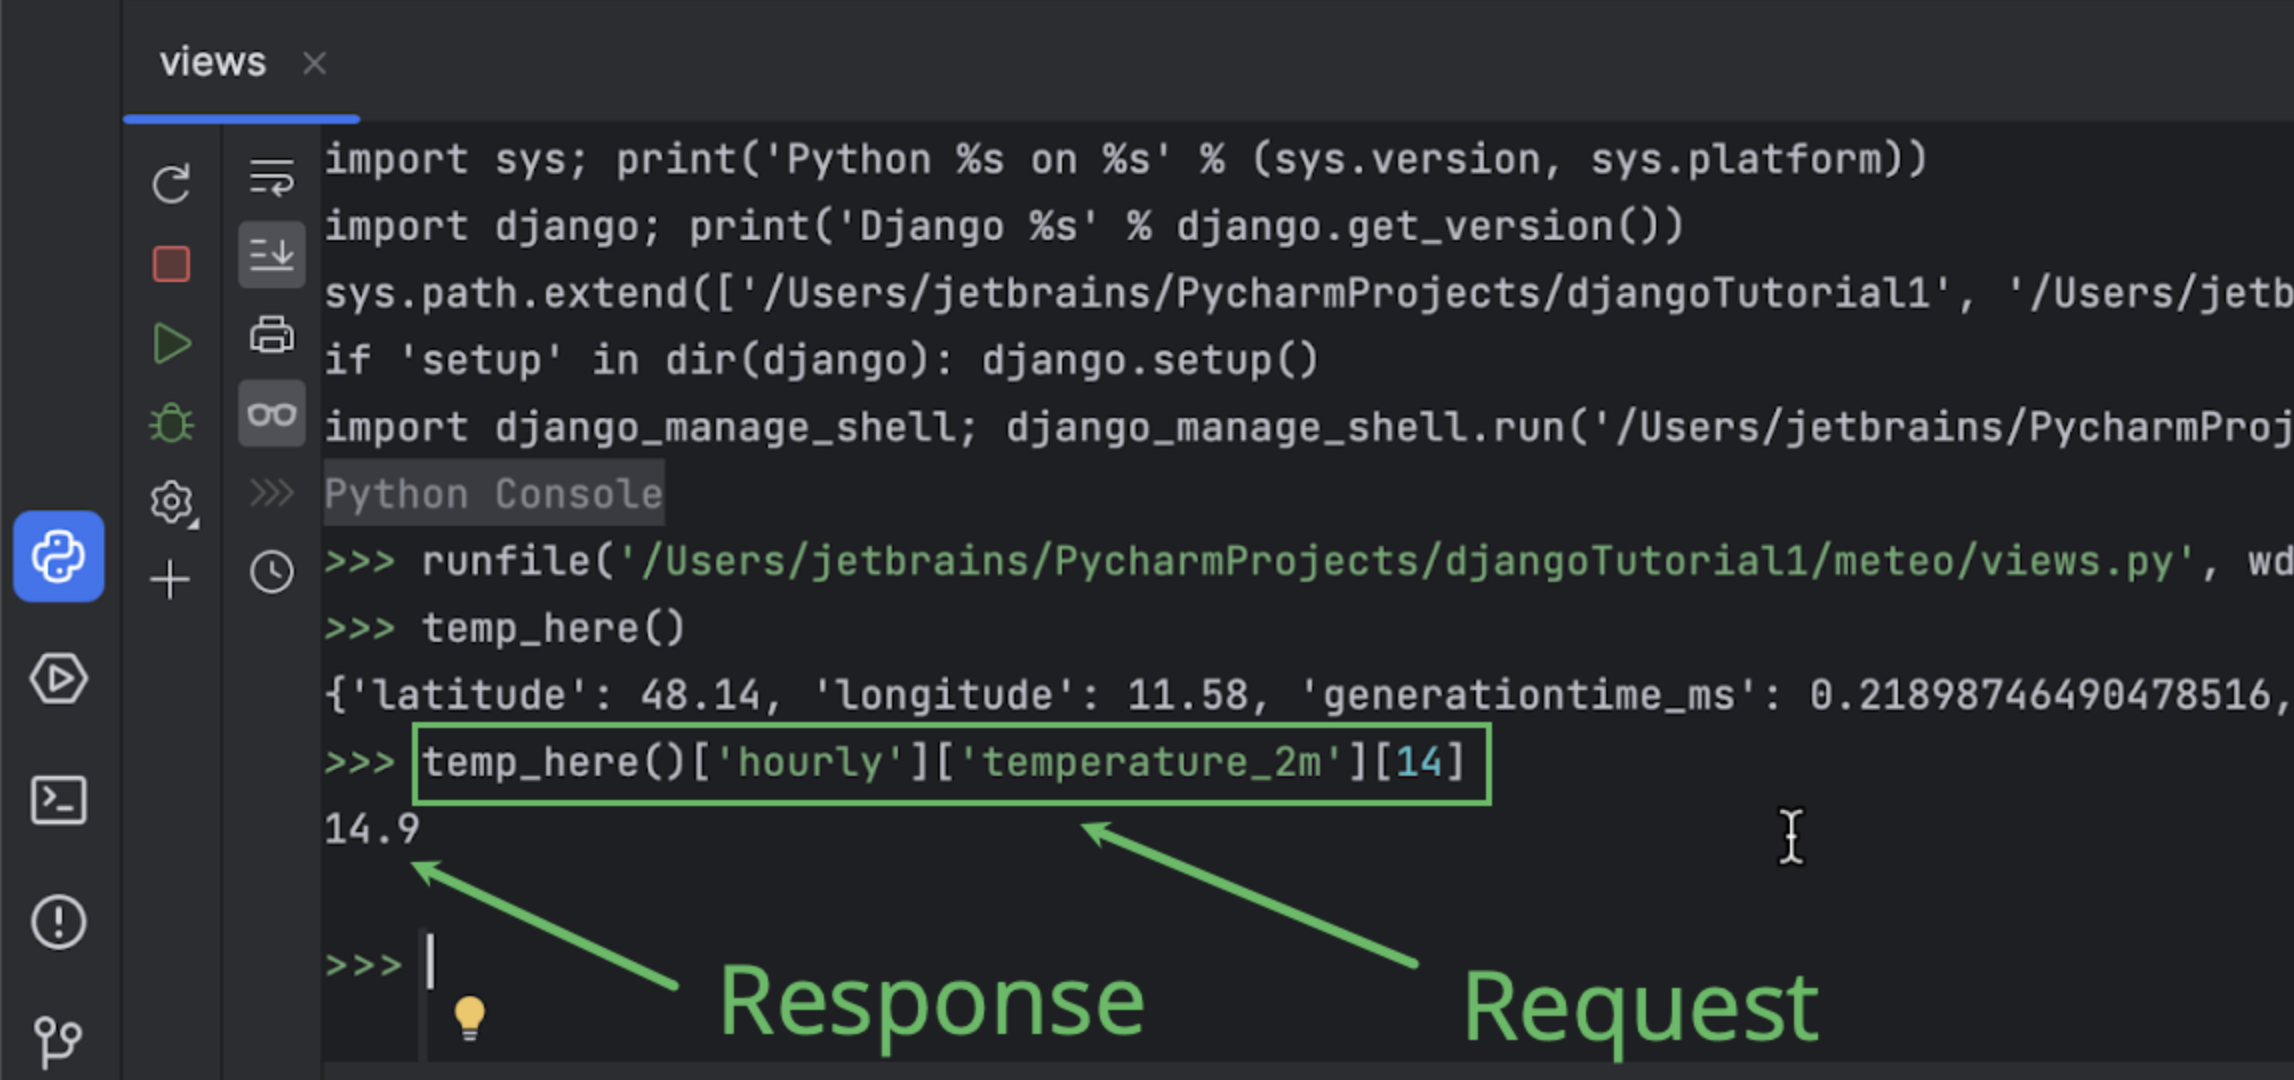 Envoi d'une requête à l'API depuis la console Python